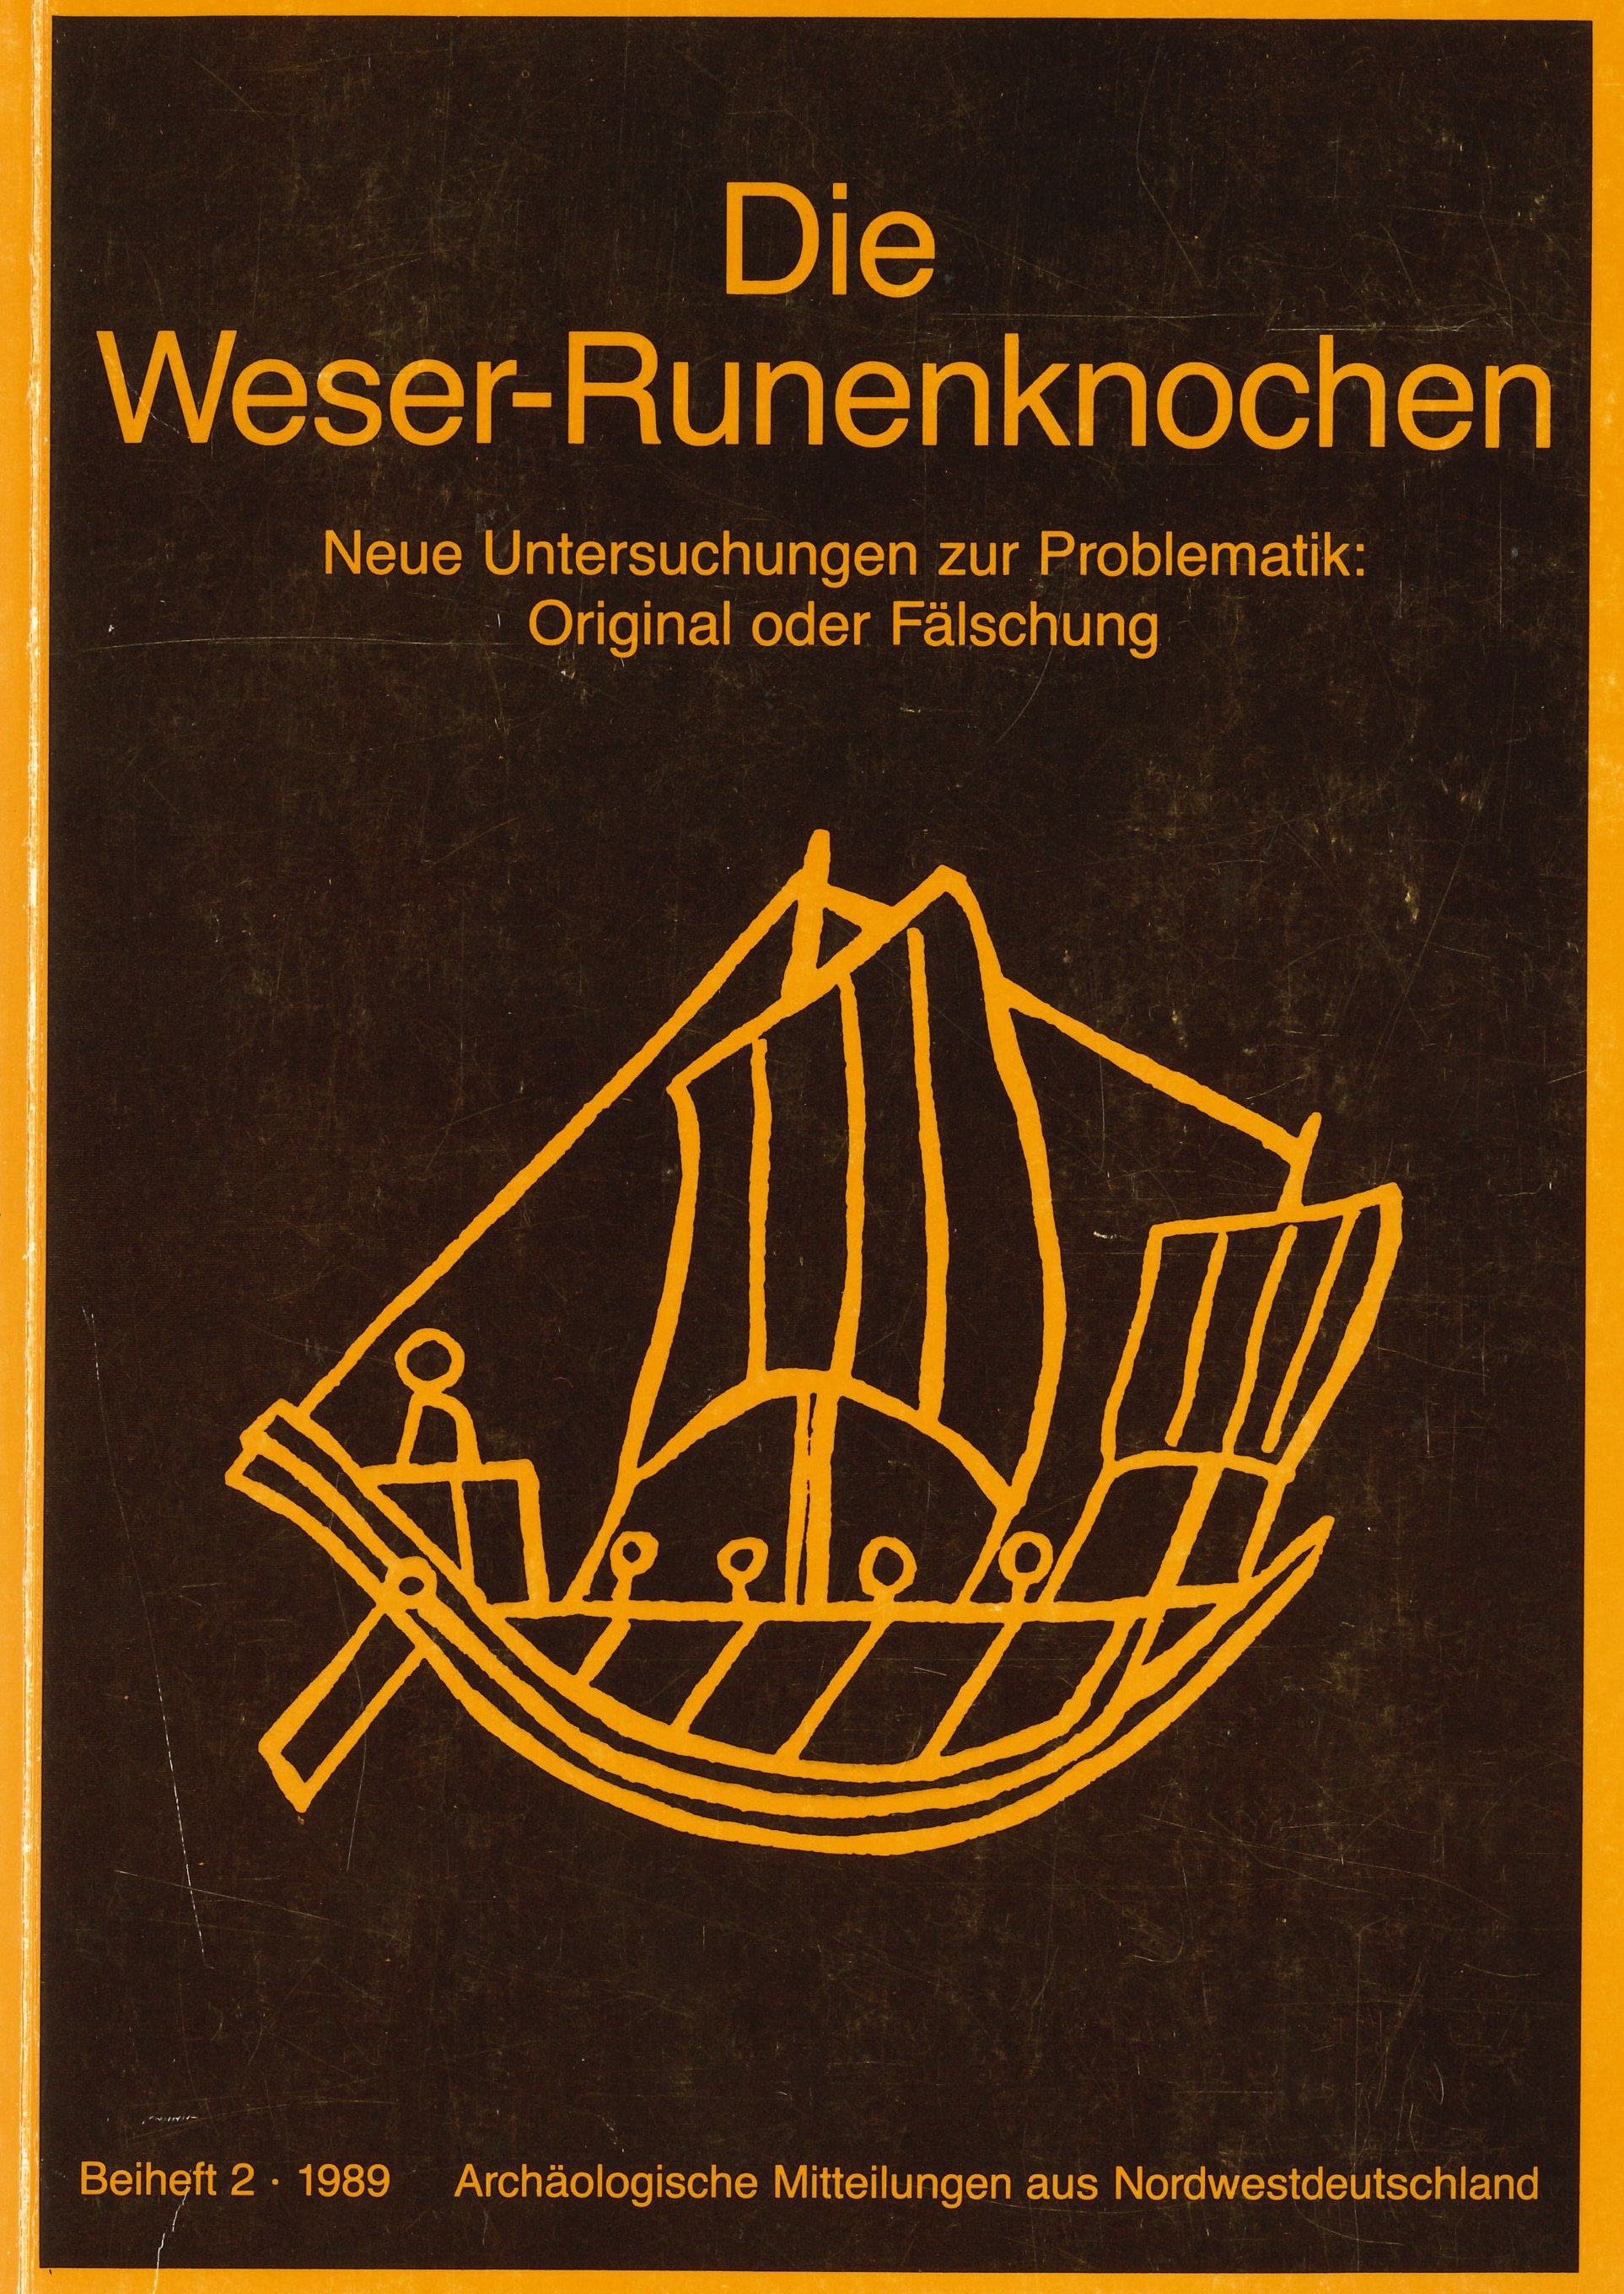 Die Weserrunenknochen Buch von Peter Pieper